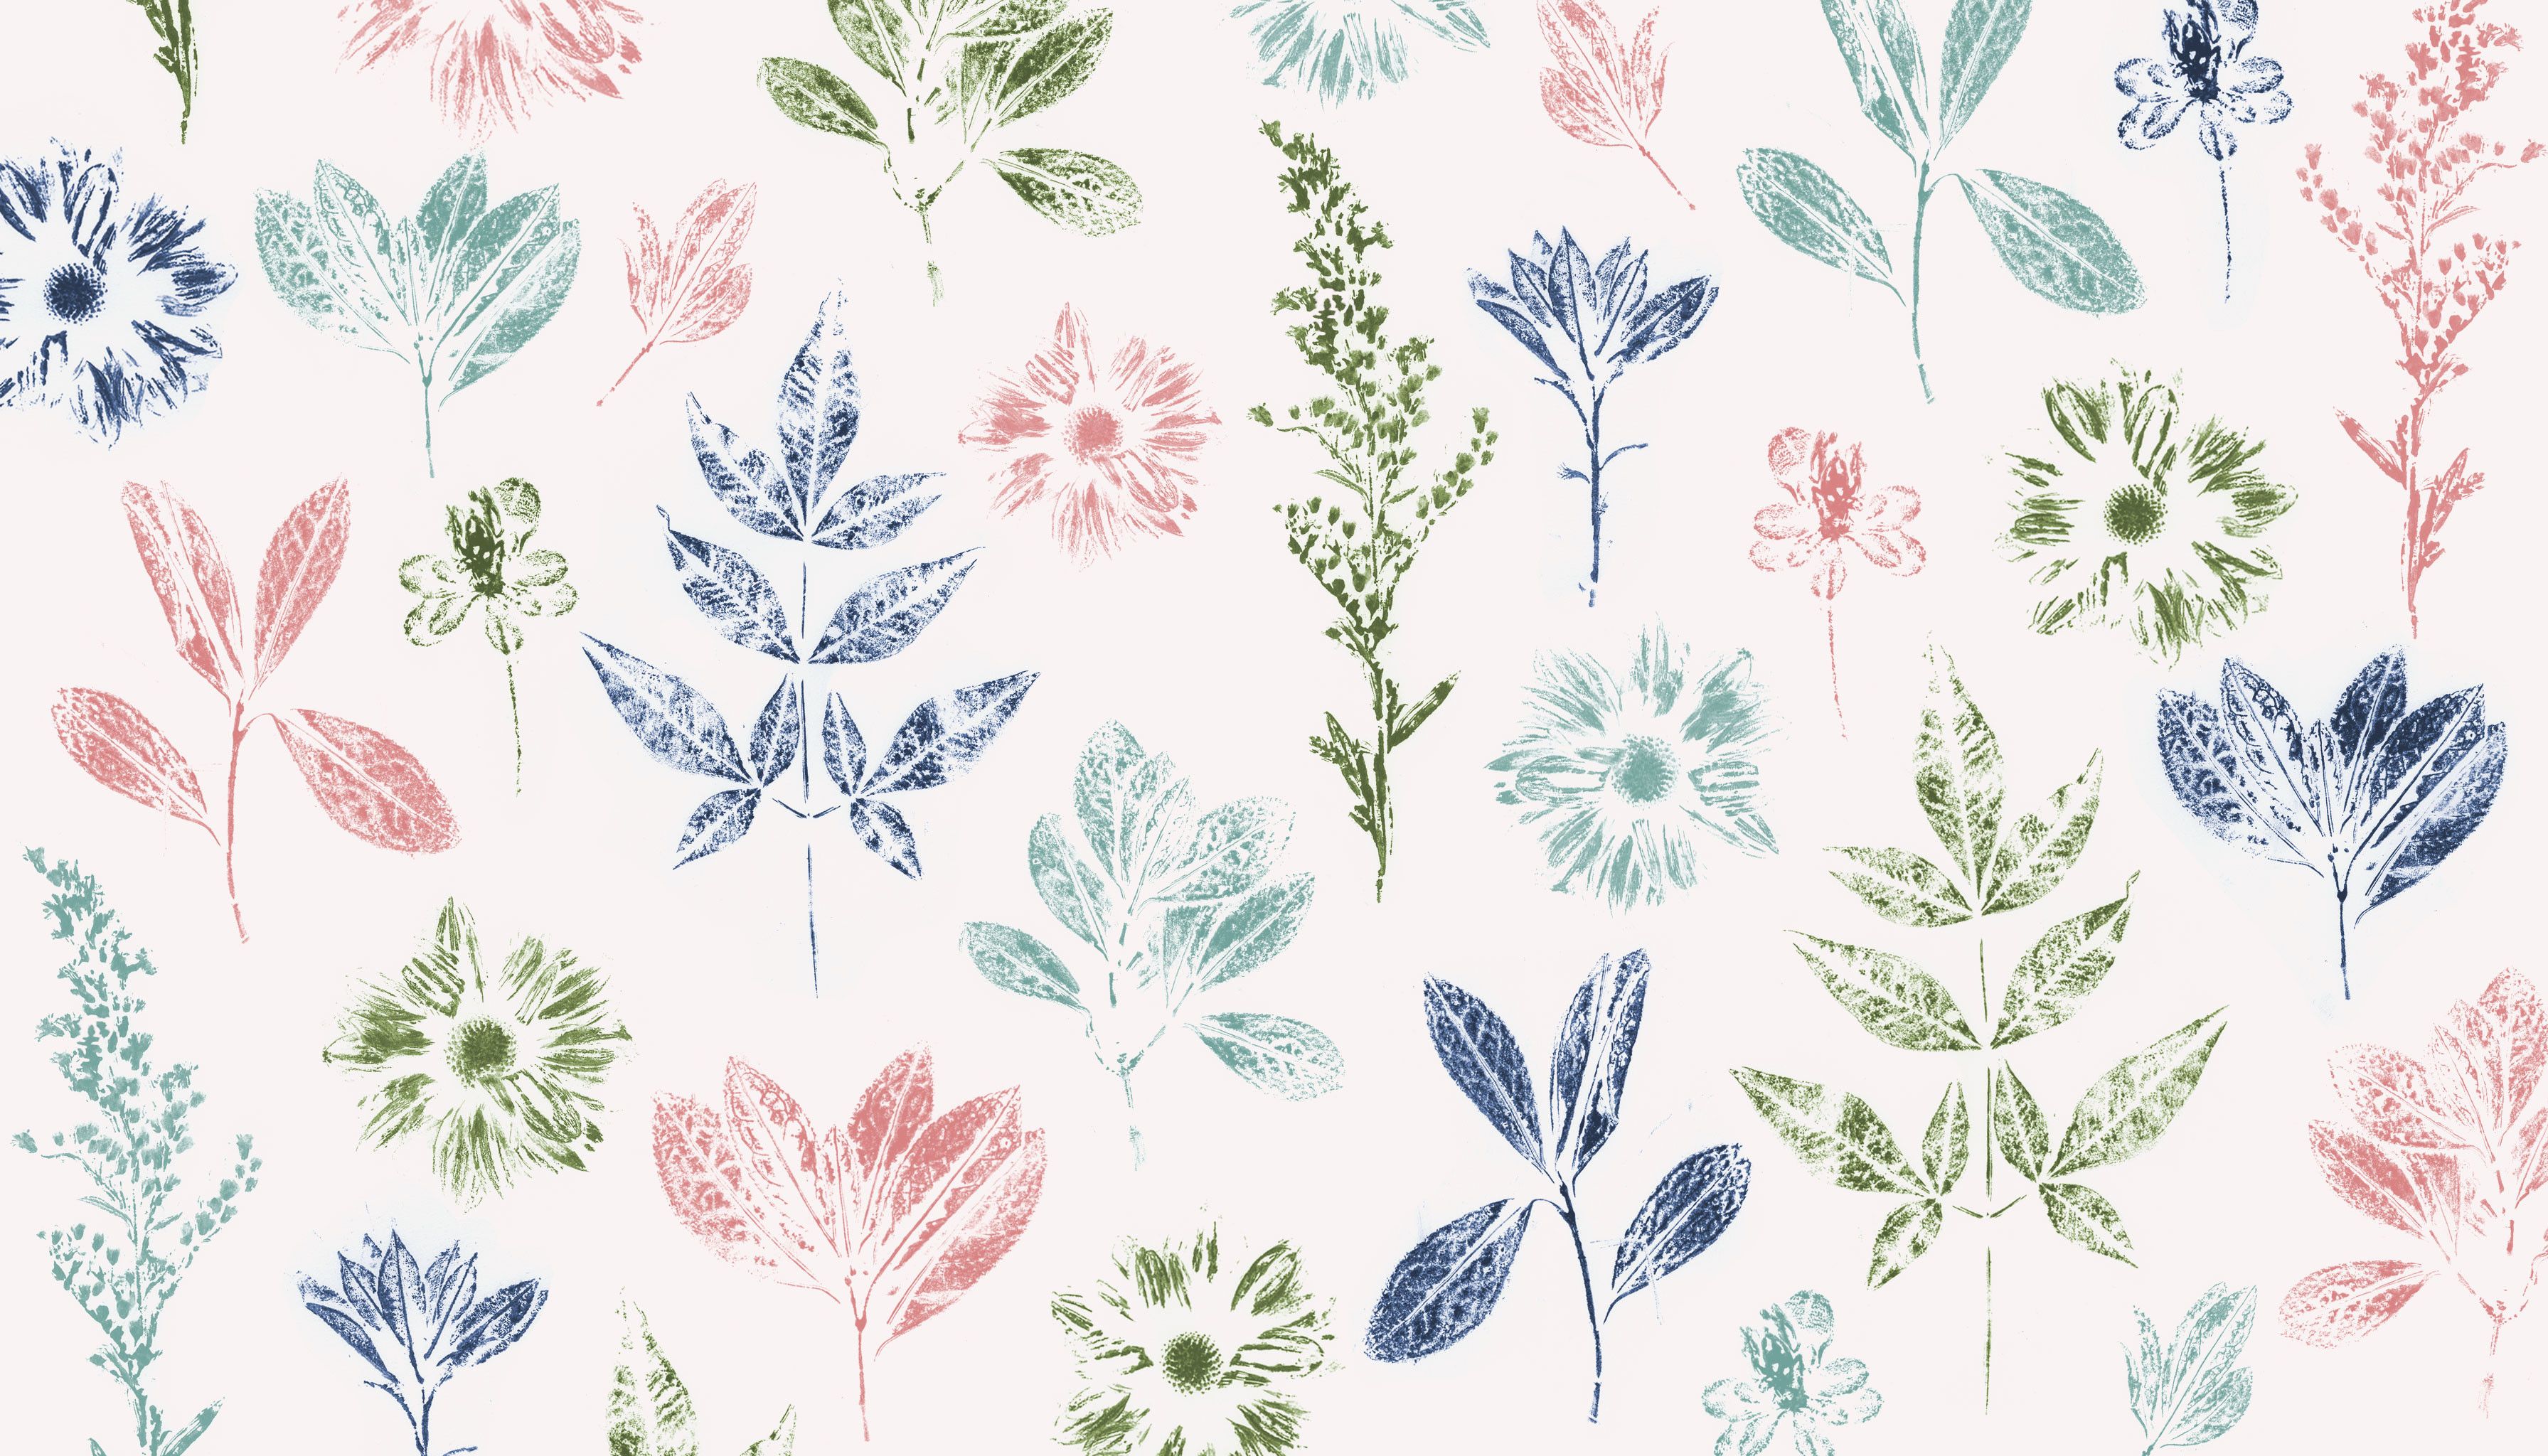 Floral Desktop Wallpaper Top Background